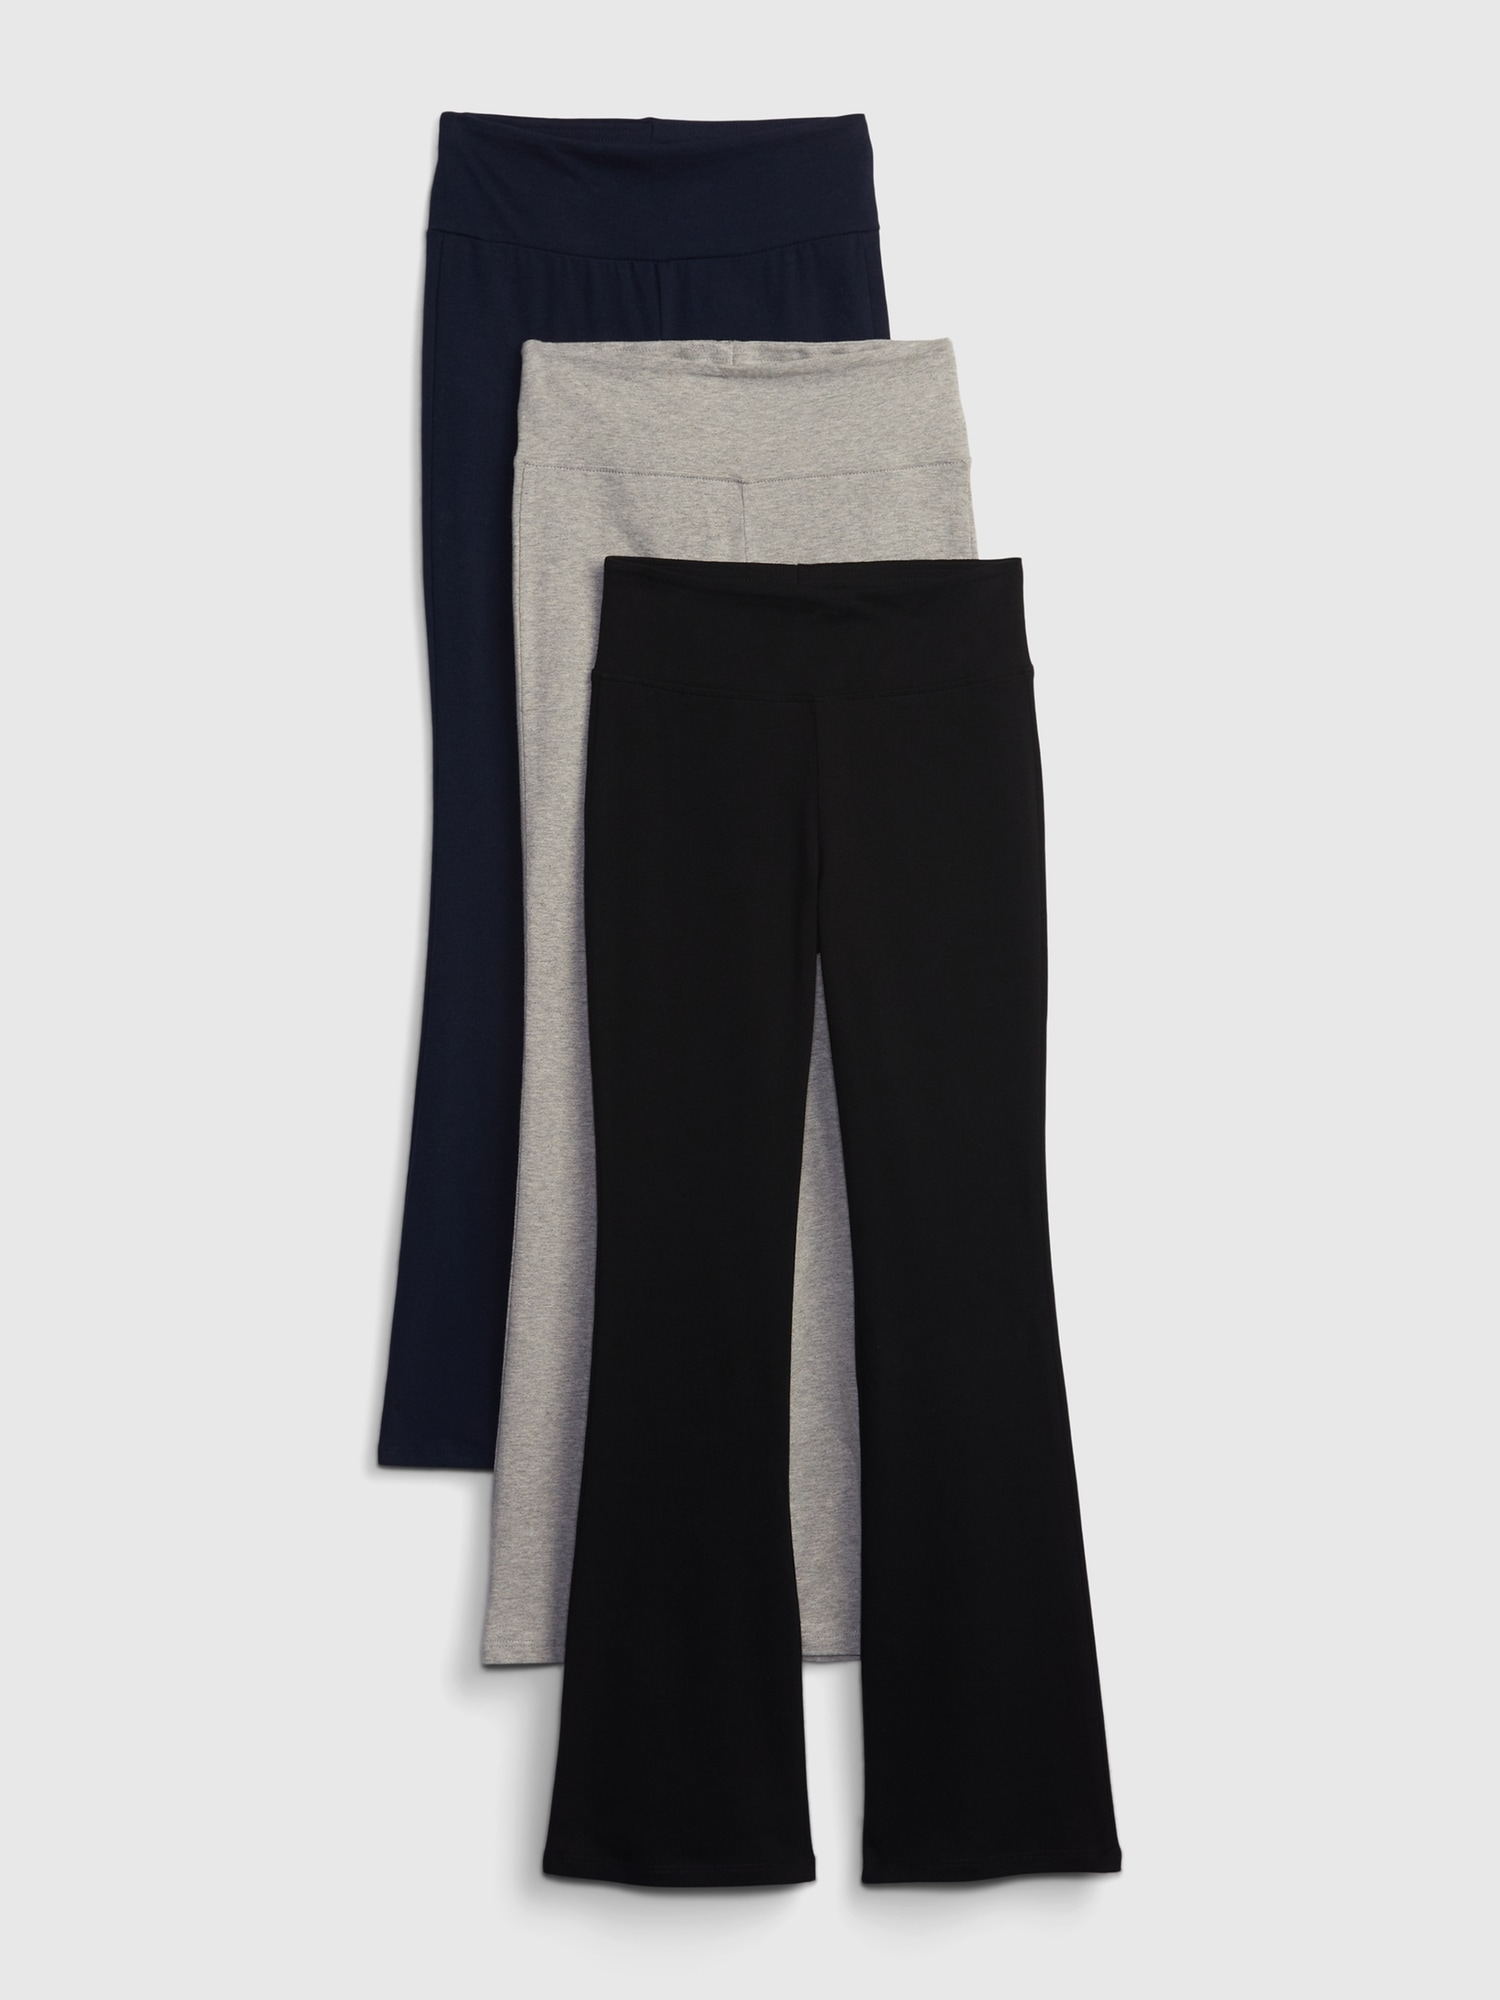 Organic Cotton Pants - Cotton Bootcut Yoga Pants